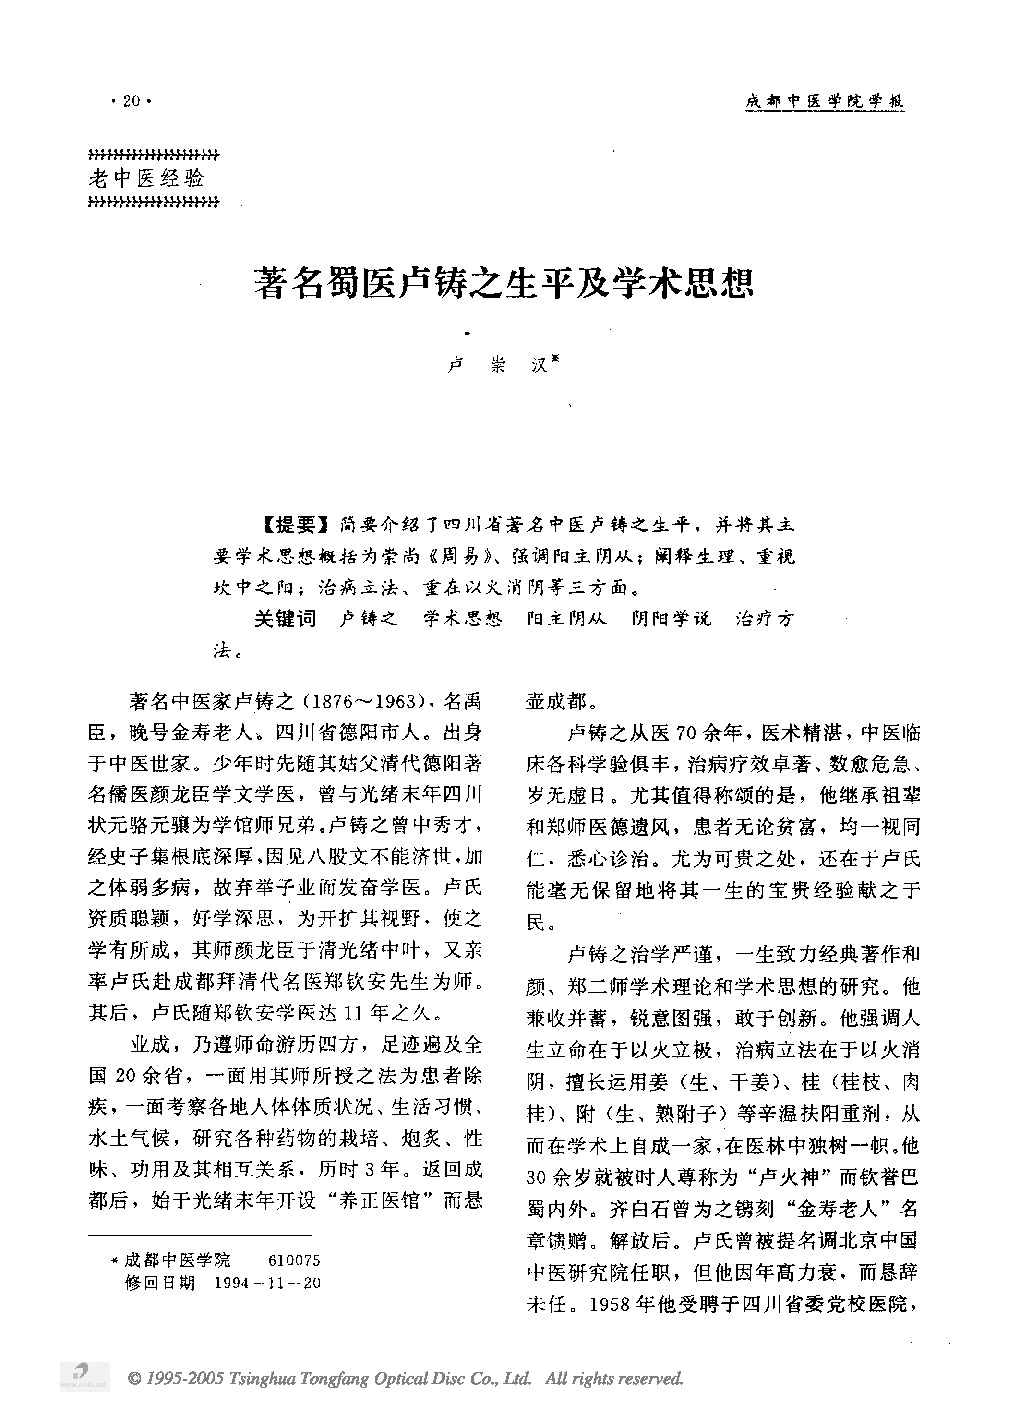 著名蜀医卢铸之生平及学术思想.PDF